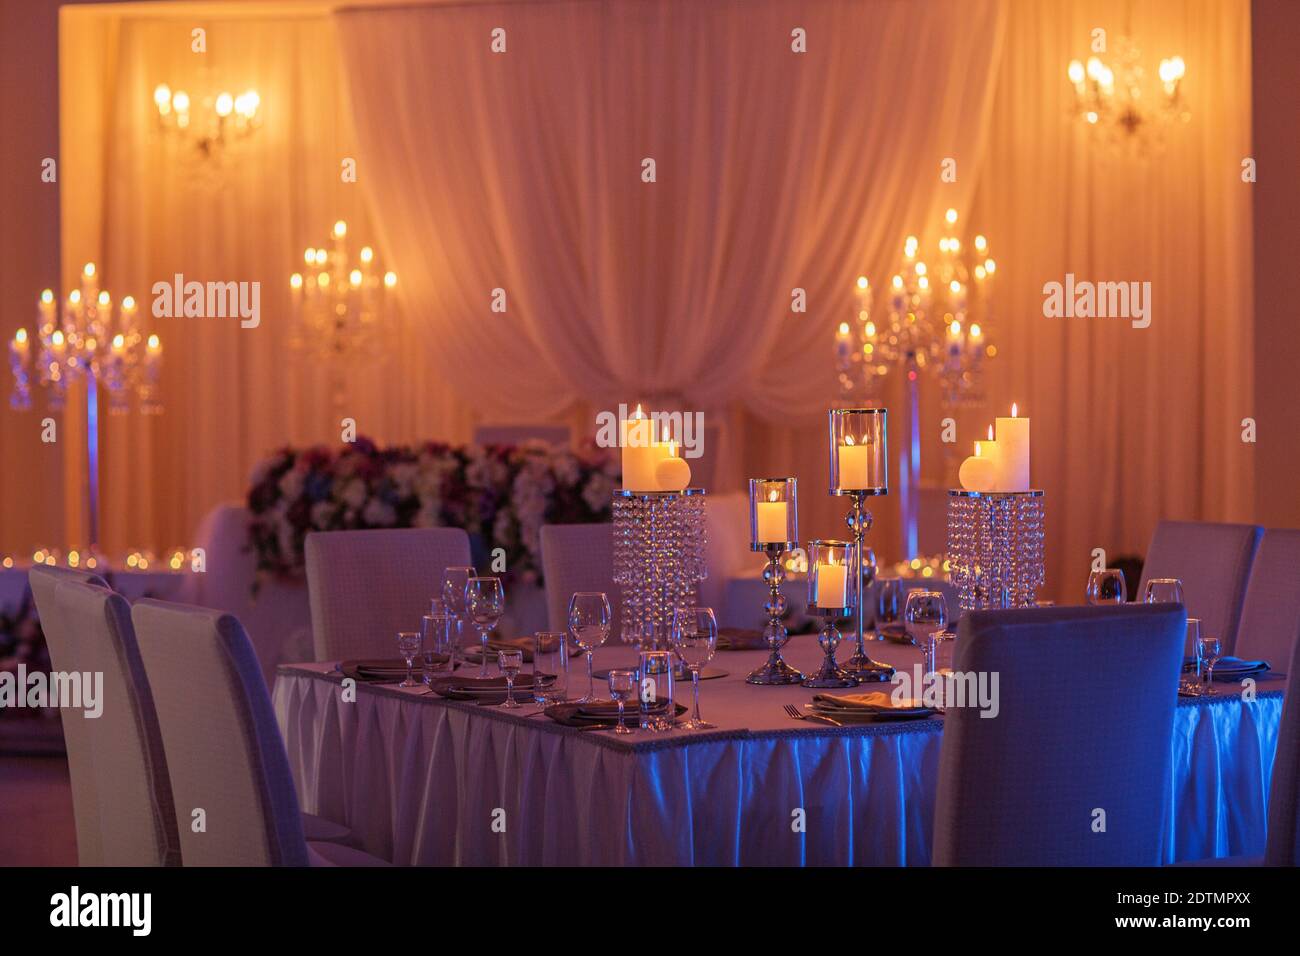 table de mariage festive avec bougies, cristal, assiettes et verres en lumière jaune. Porte-bougie en cristal comme pièce centrale à la réception d'un mariage Banque D'Images